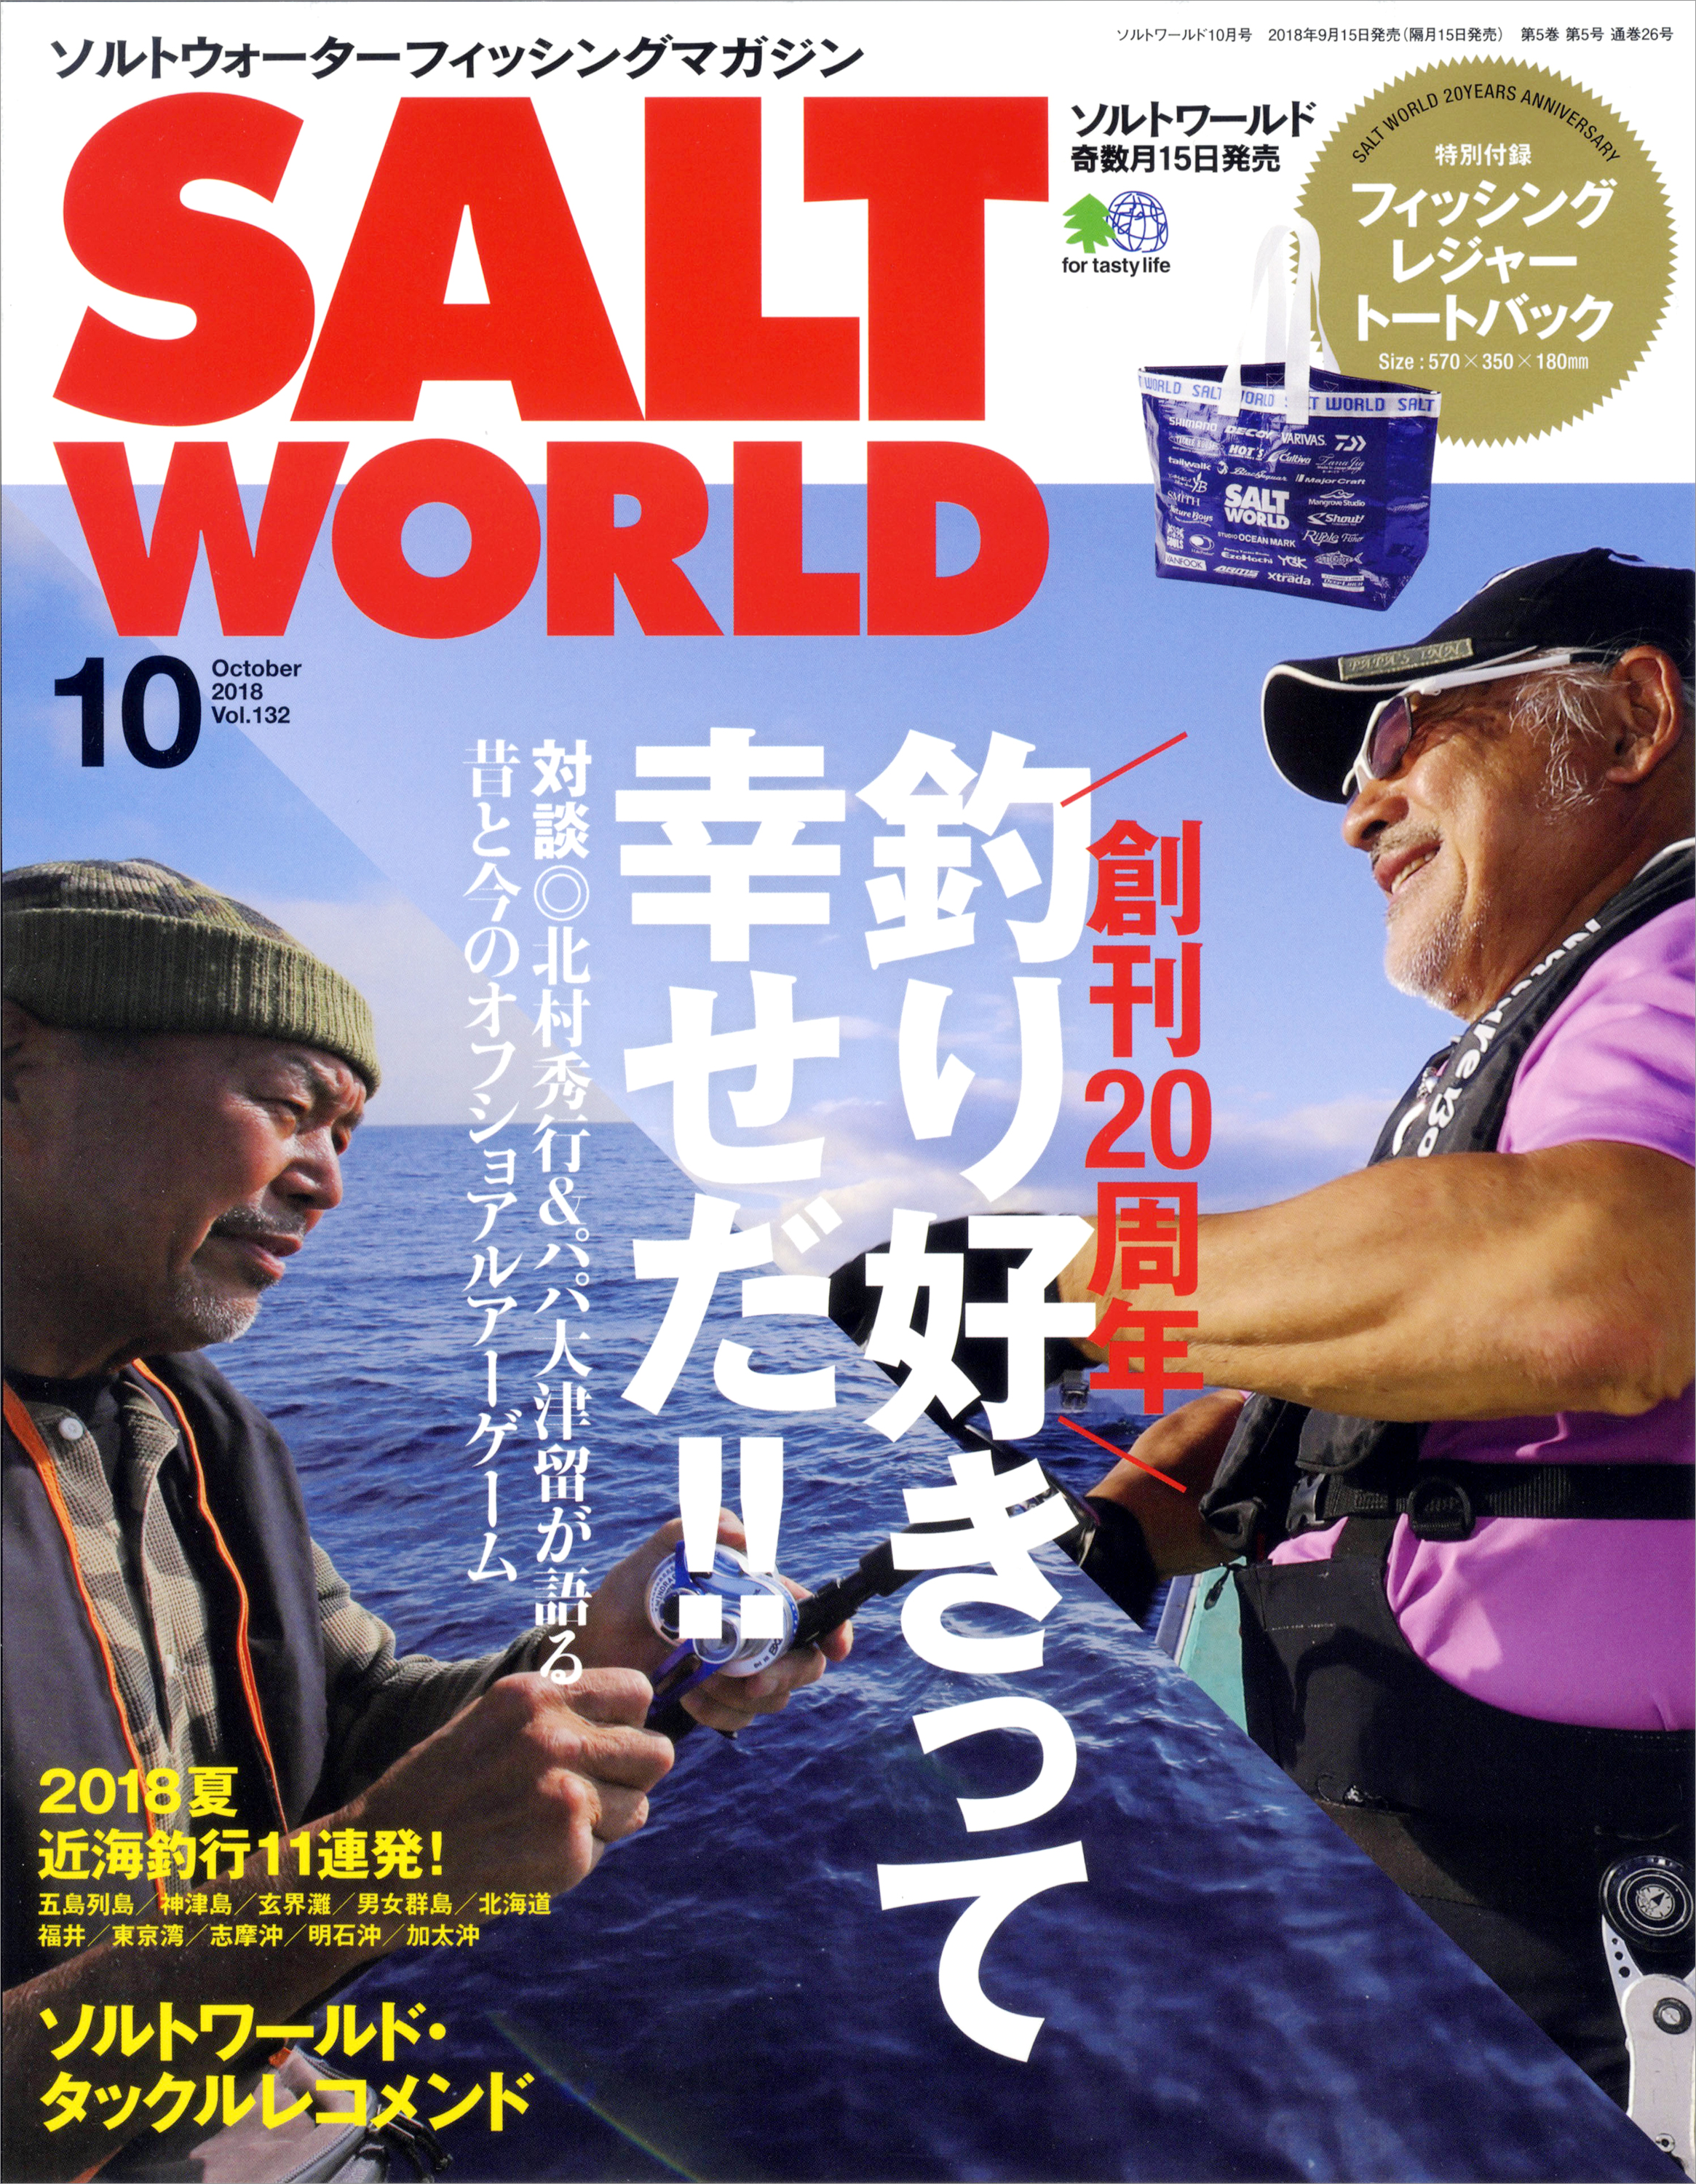 釣り好きって幸せだ 周年を迎えたソルトルアーフィッシングの専門誌 Salt World ソルトワールド から記念特大号発売 株式会社エイ出版 社のプレスリリース